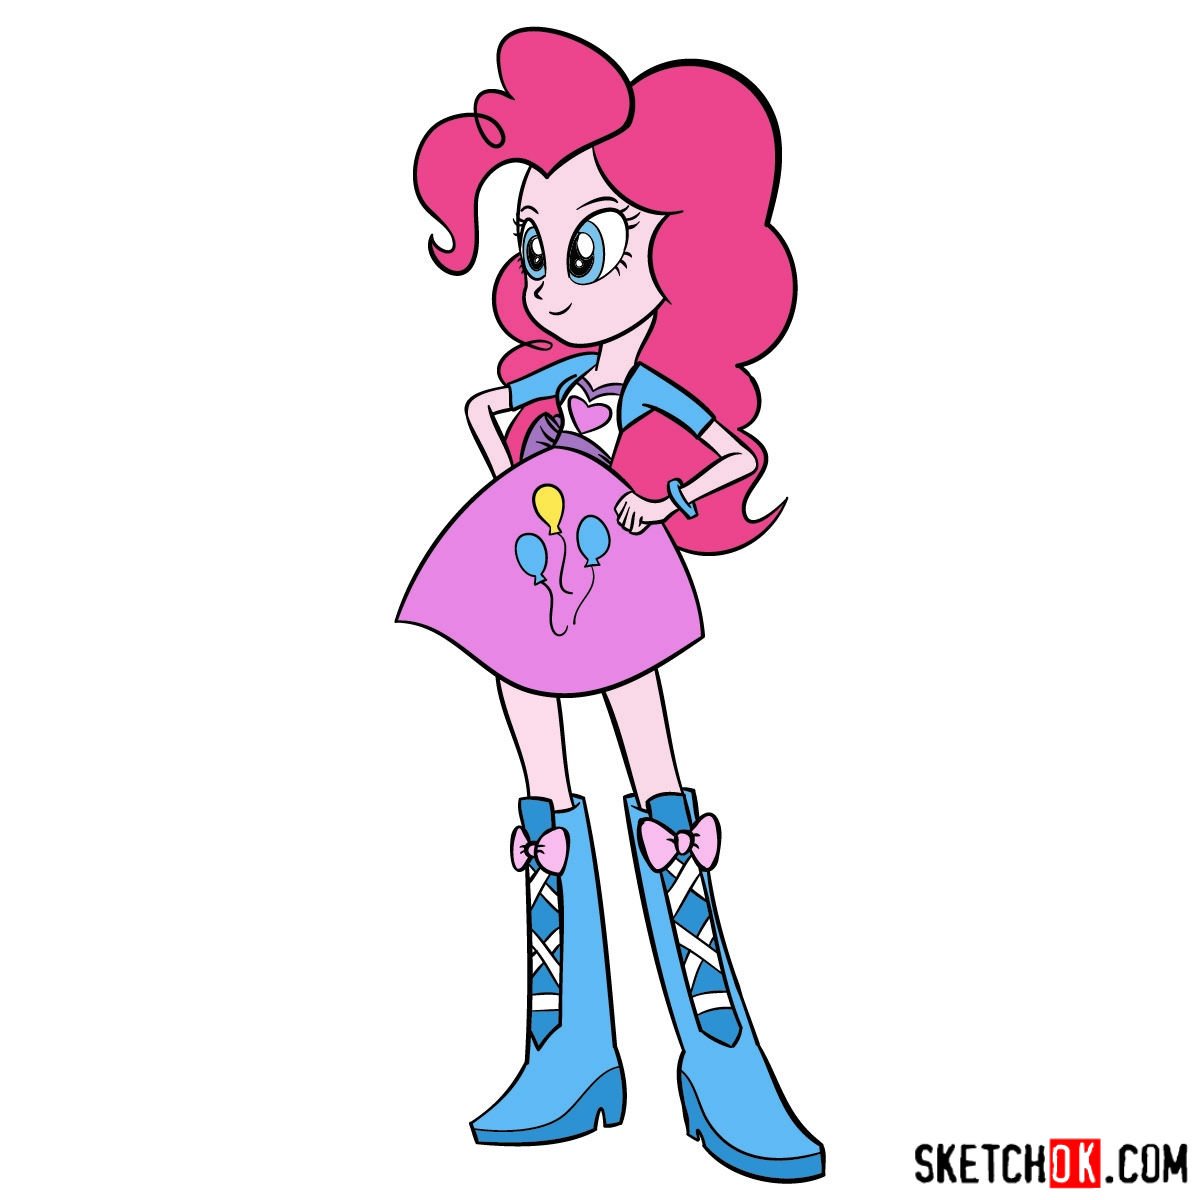 How to draw Pinkie Pie - Equestria Girls